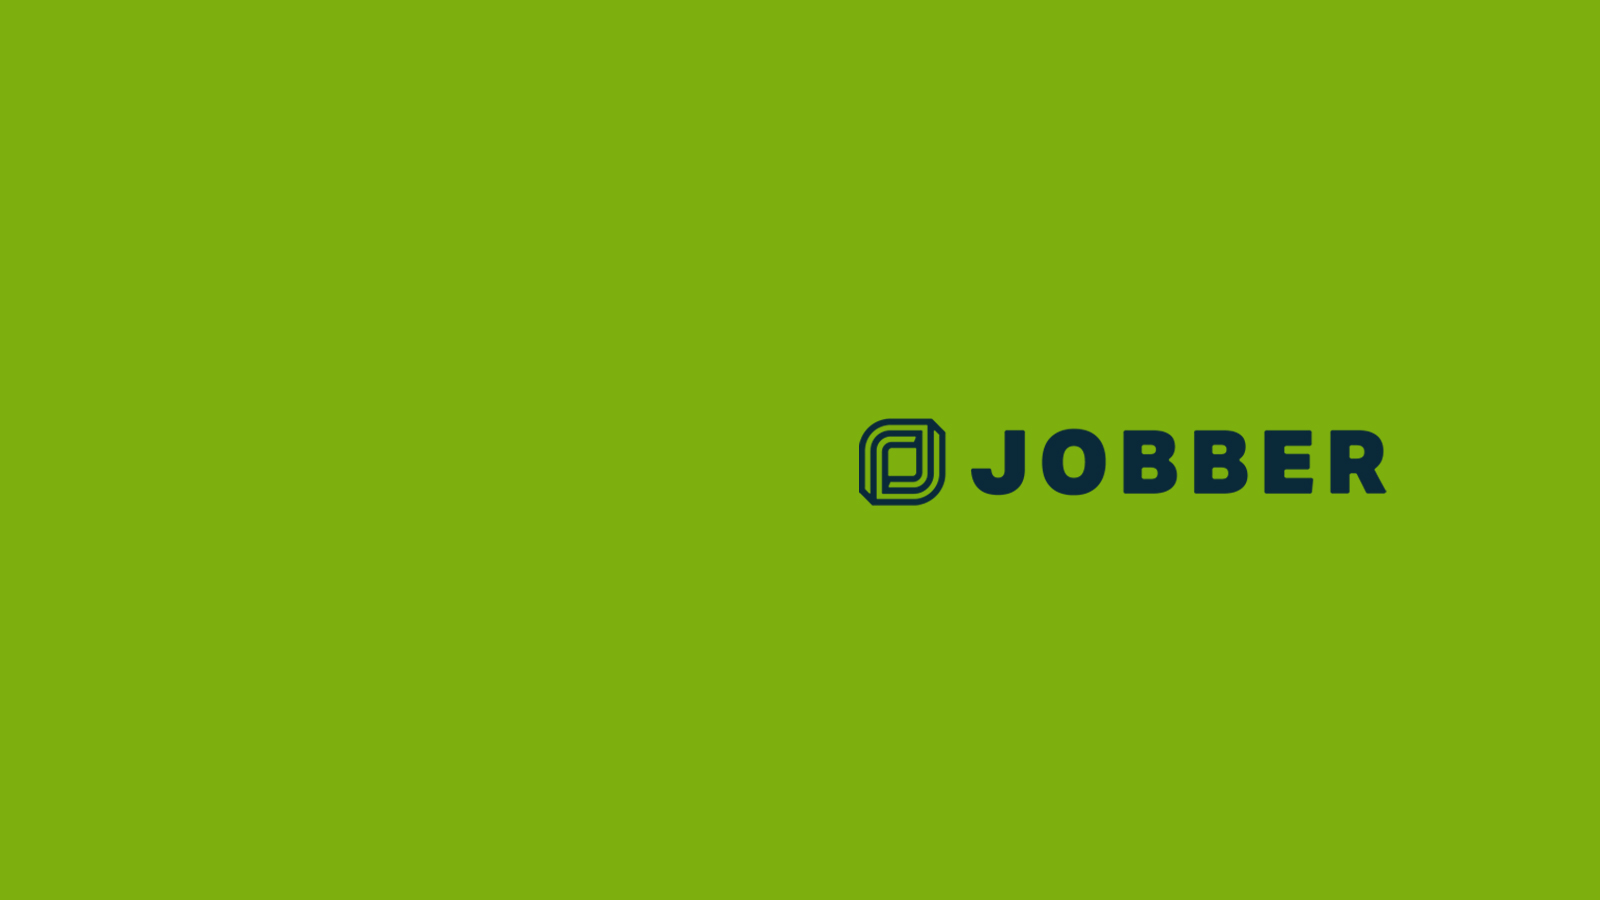 Jobber logo.